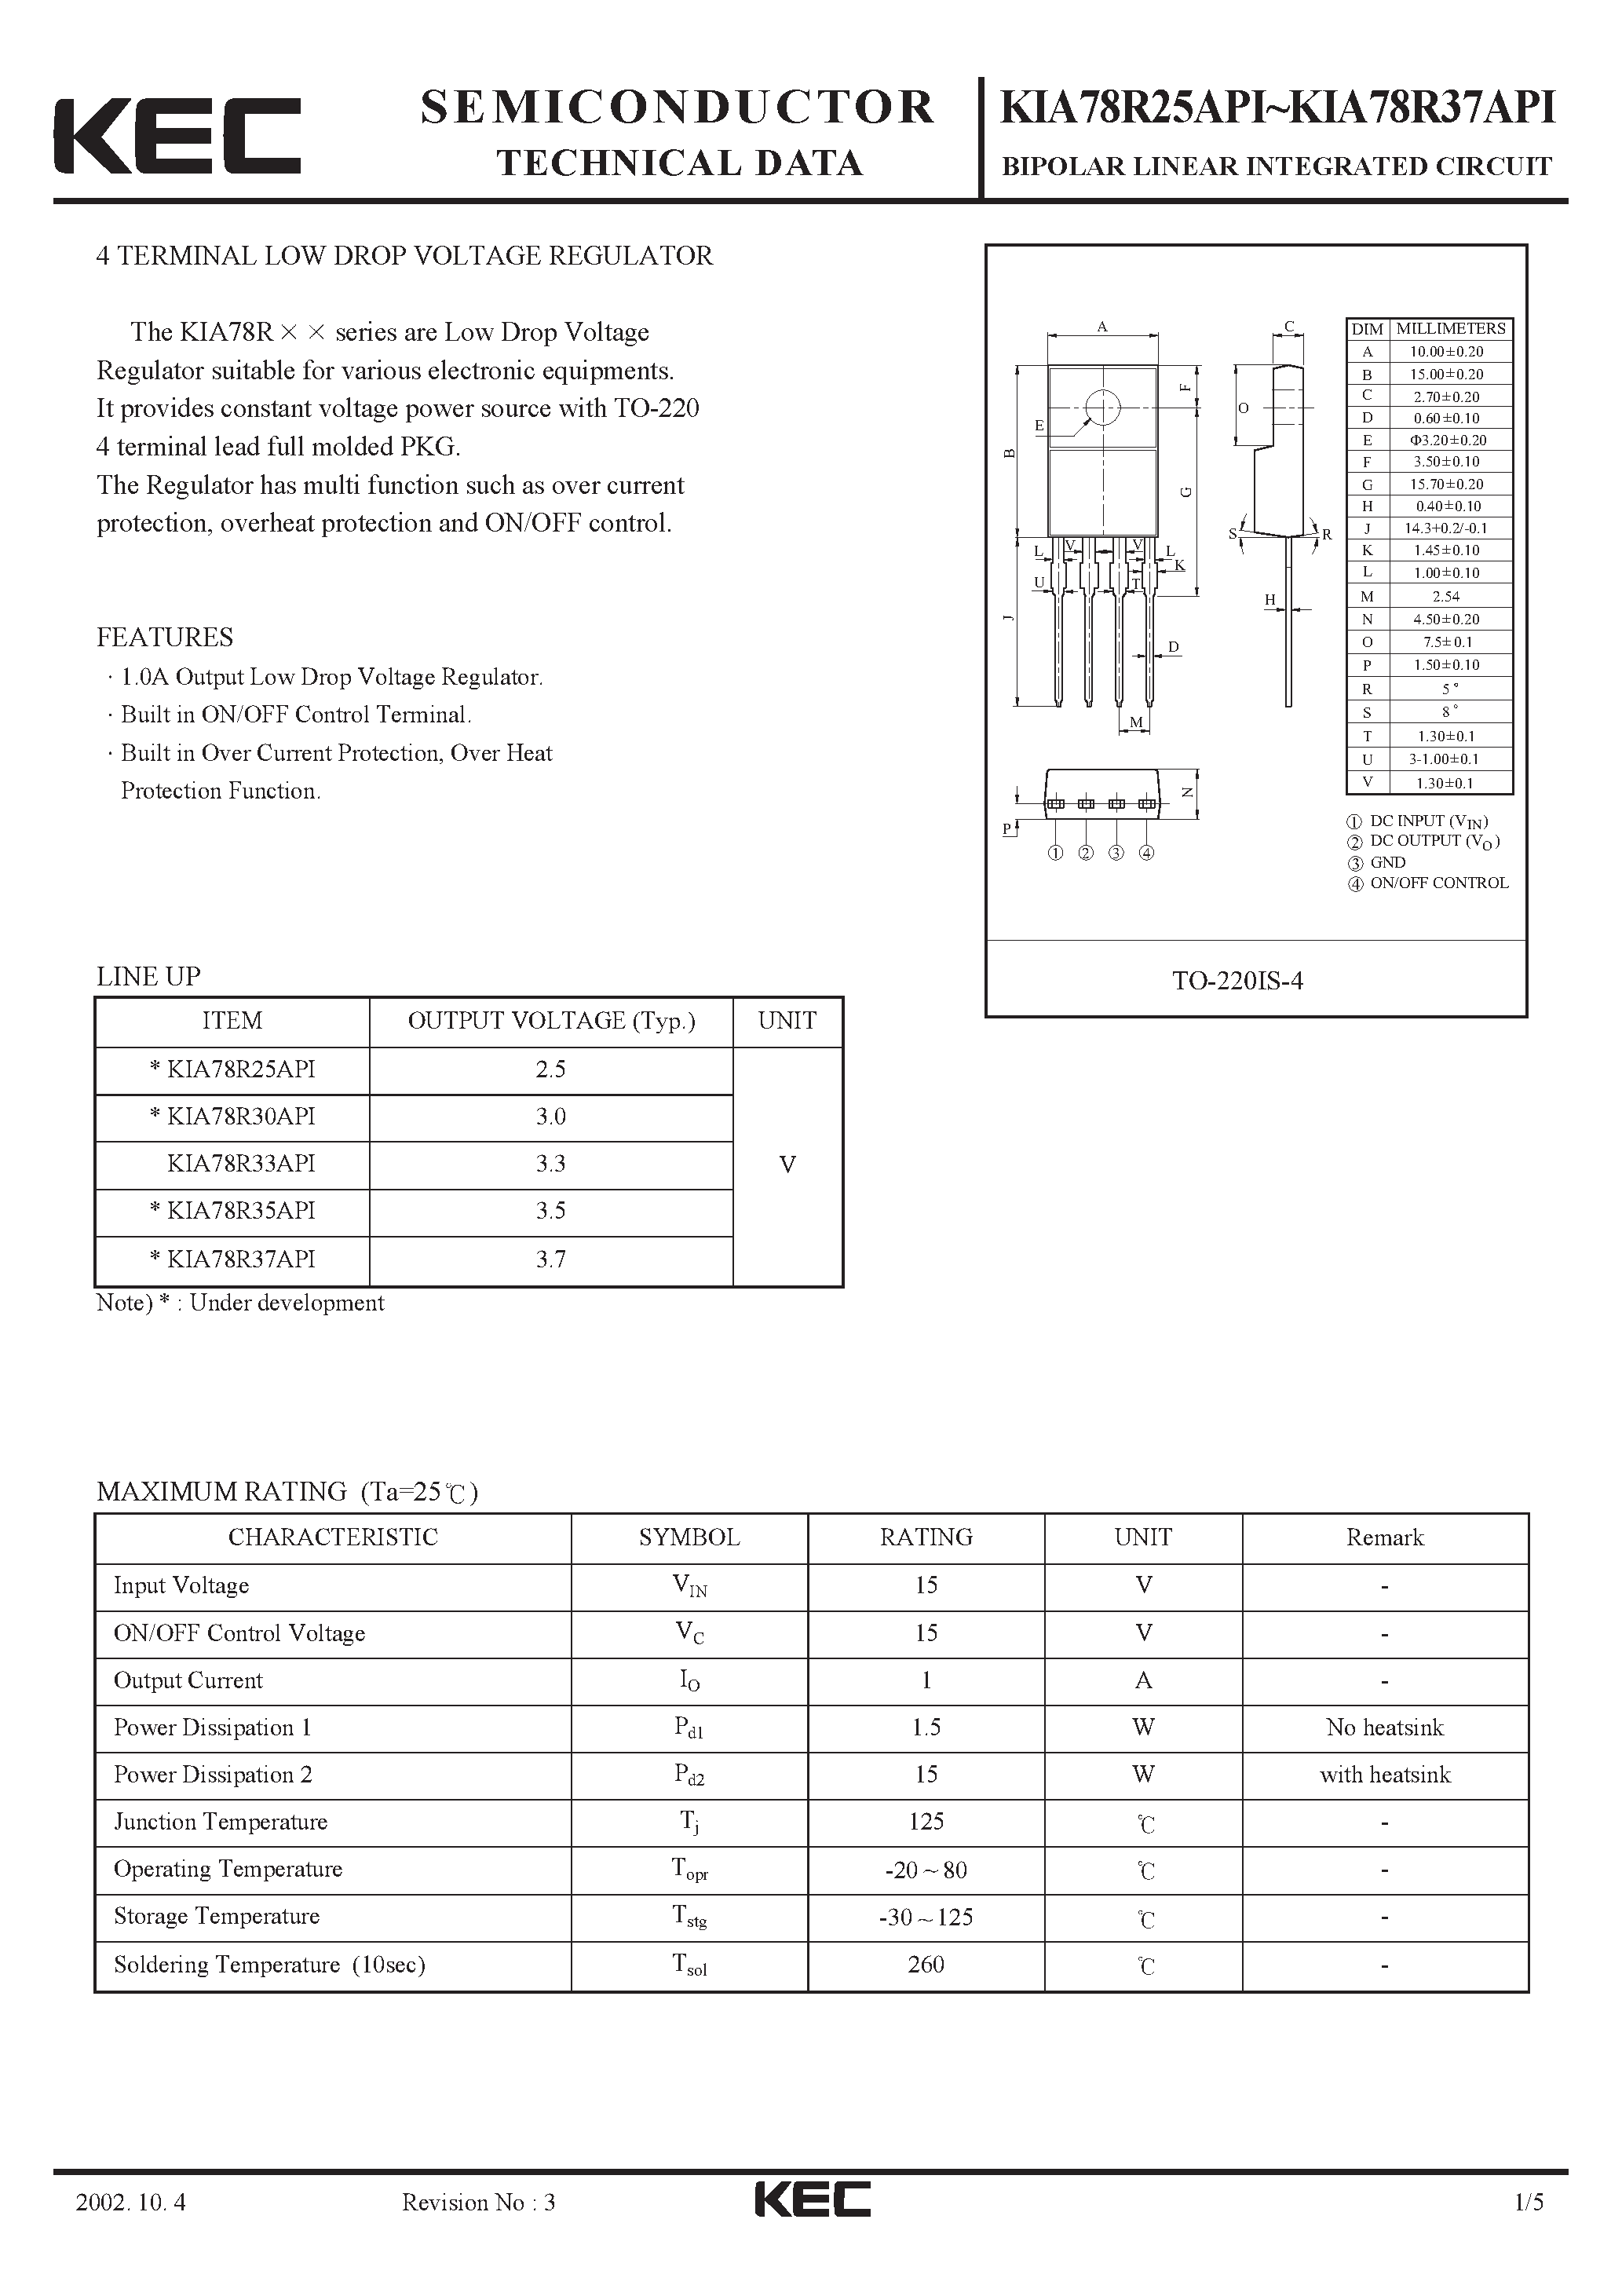 Datasheet KIA78R33API - BIPOLAR LINEAR INTEGRATED CIRCUIT (4 TERMINAL LOW DROP VOLTAGE REGULATOR) page 1